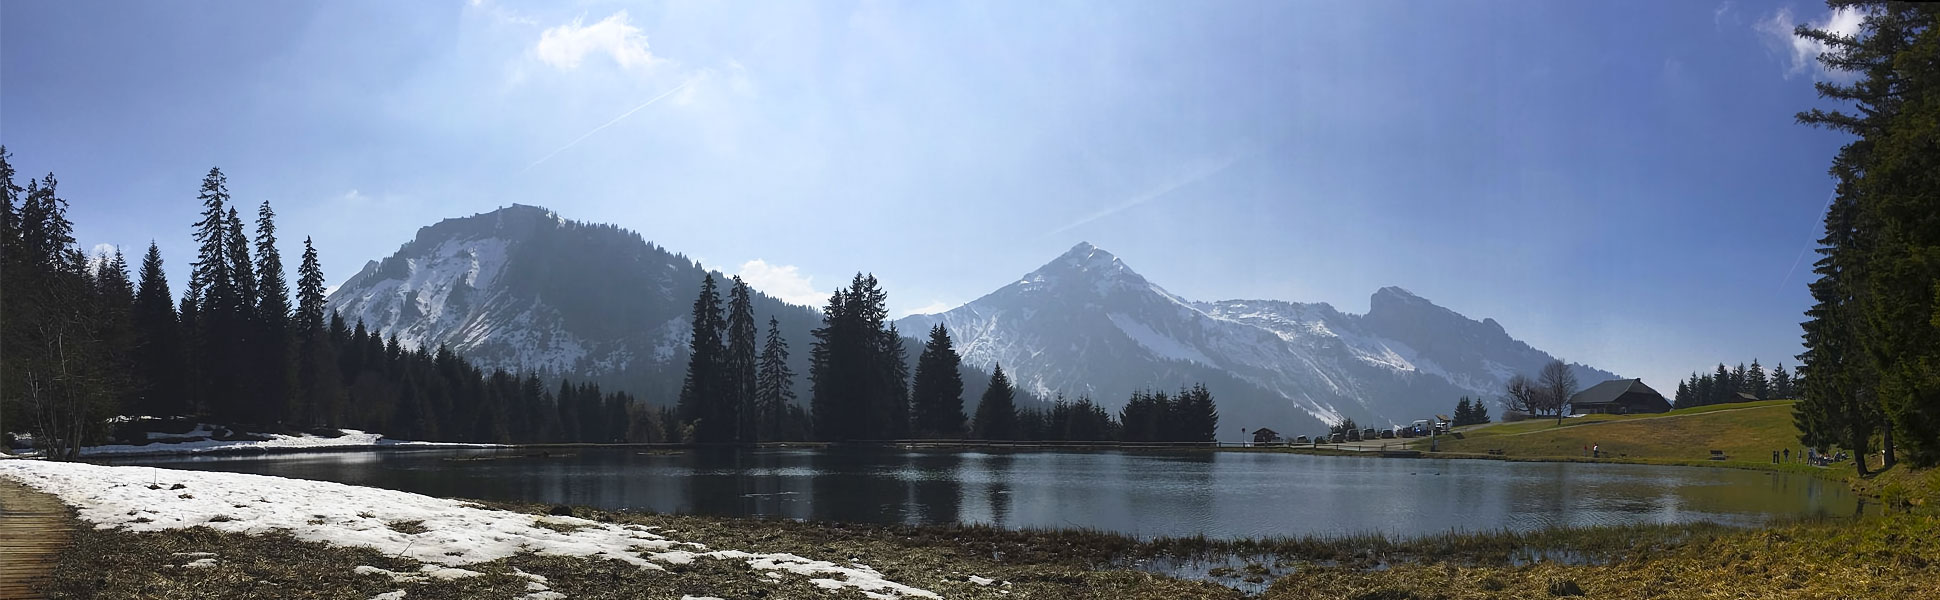 Photographie du Lac des Mines d’Or près de Morzine (Alpes).